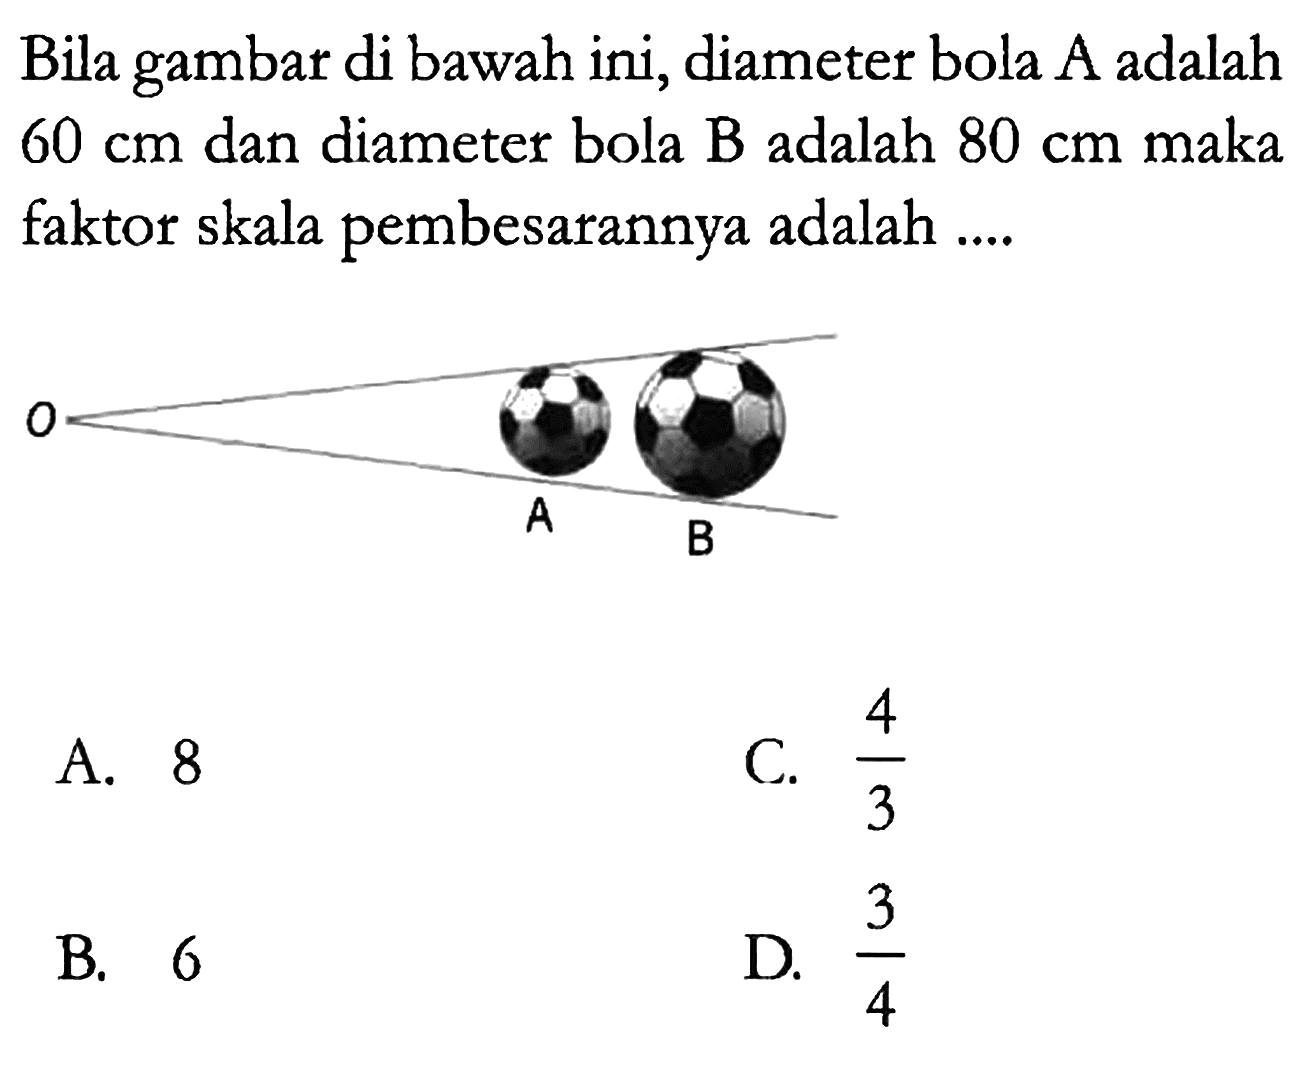 Bila gambar di bawah ini, diameter bola A adalah 60 cm dan diameter bola B adalah 80 cm maka faktor skala pembesarannya adalah ....
O A B
A. 8 C.  4/3 
B. 6 D.  3/4 